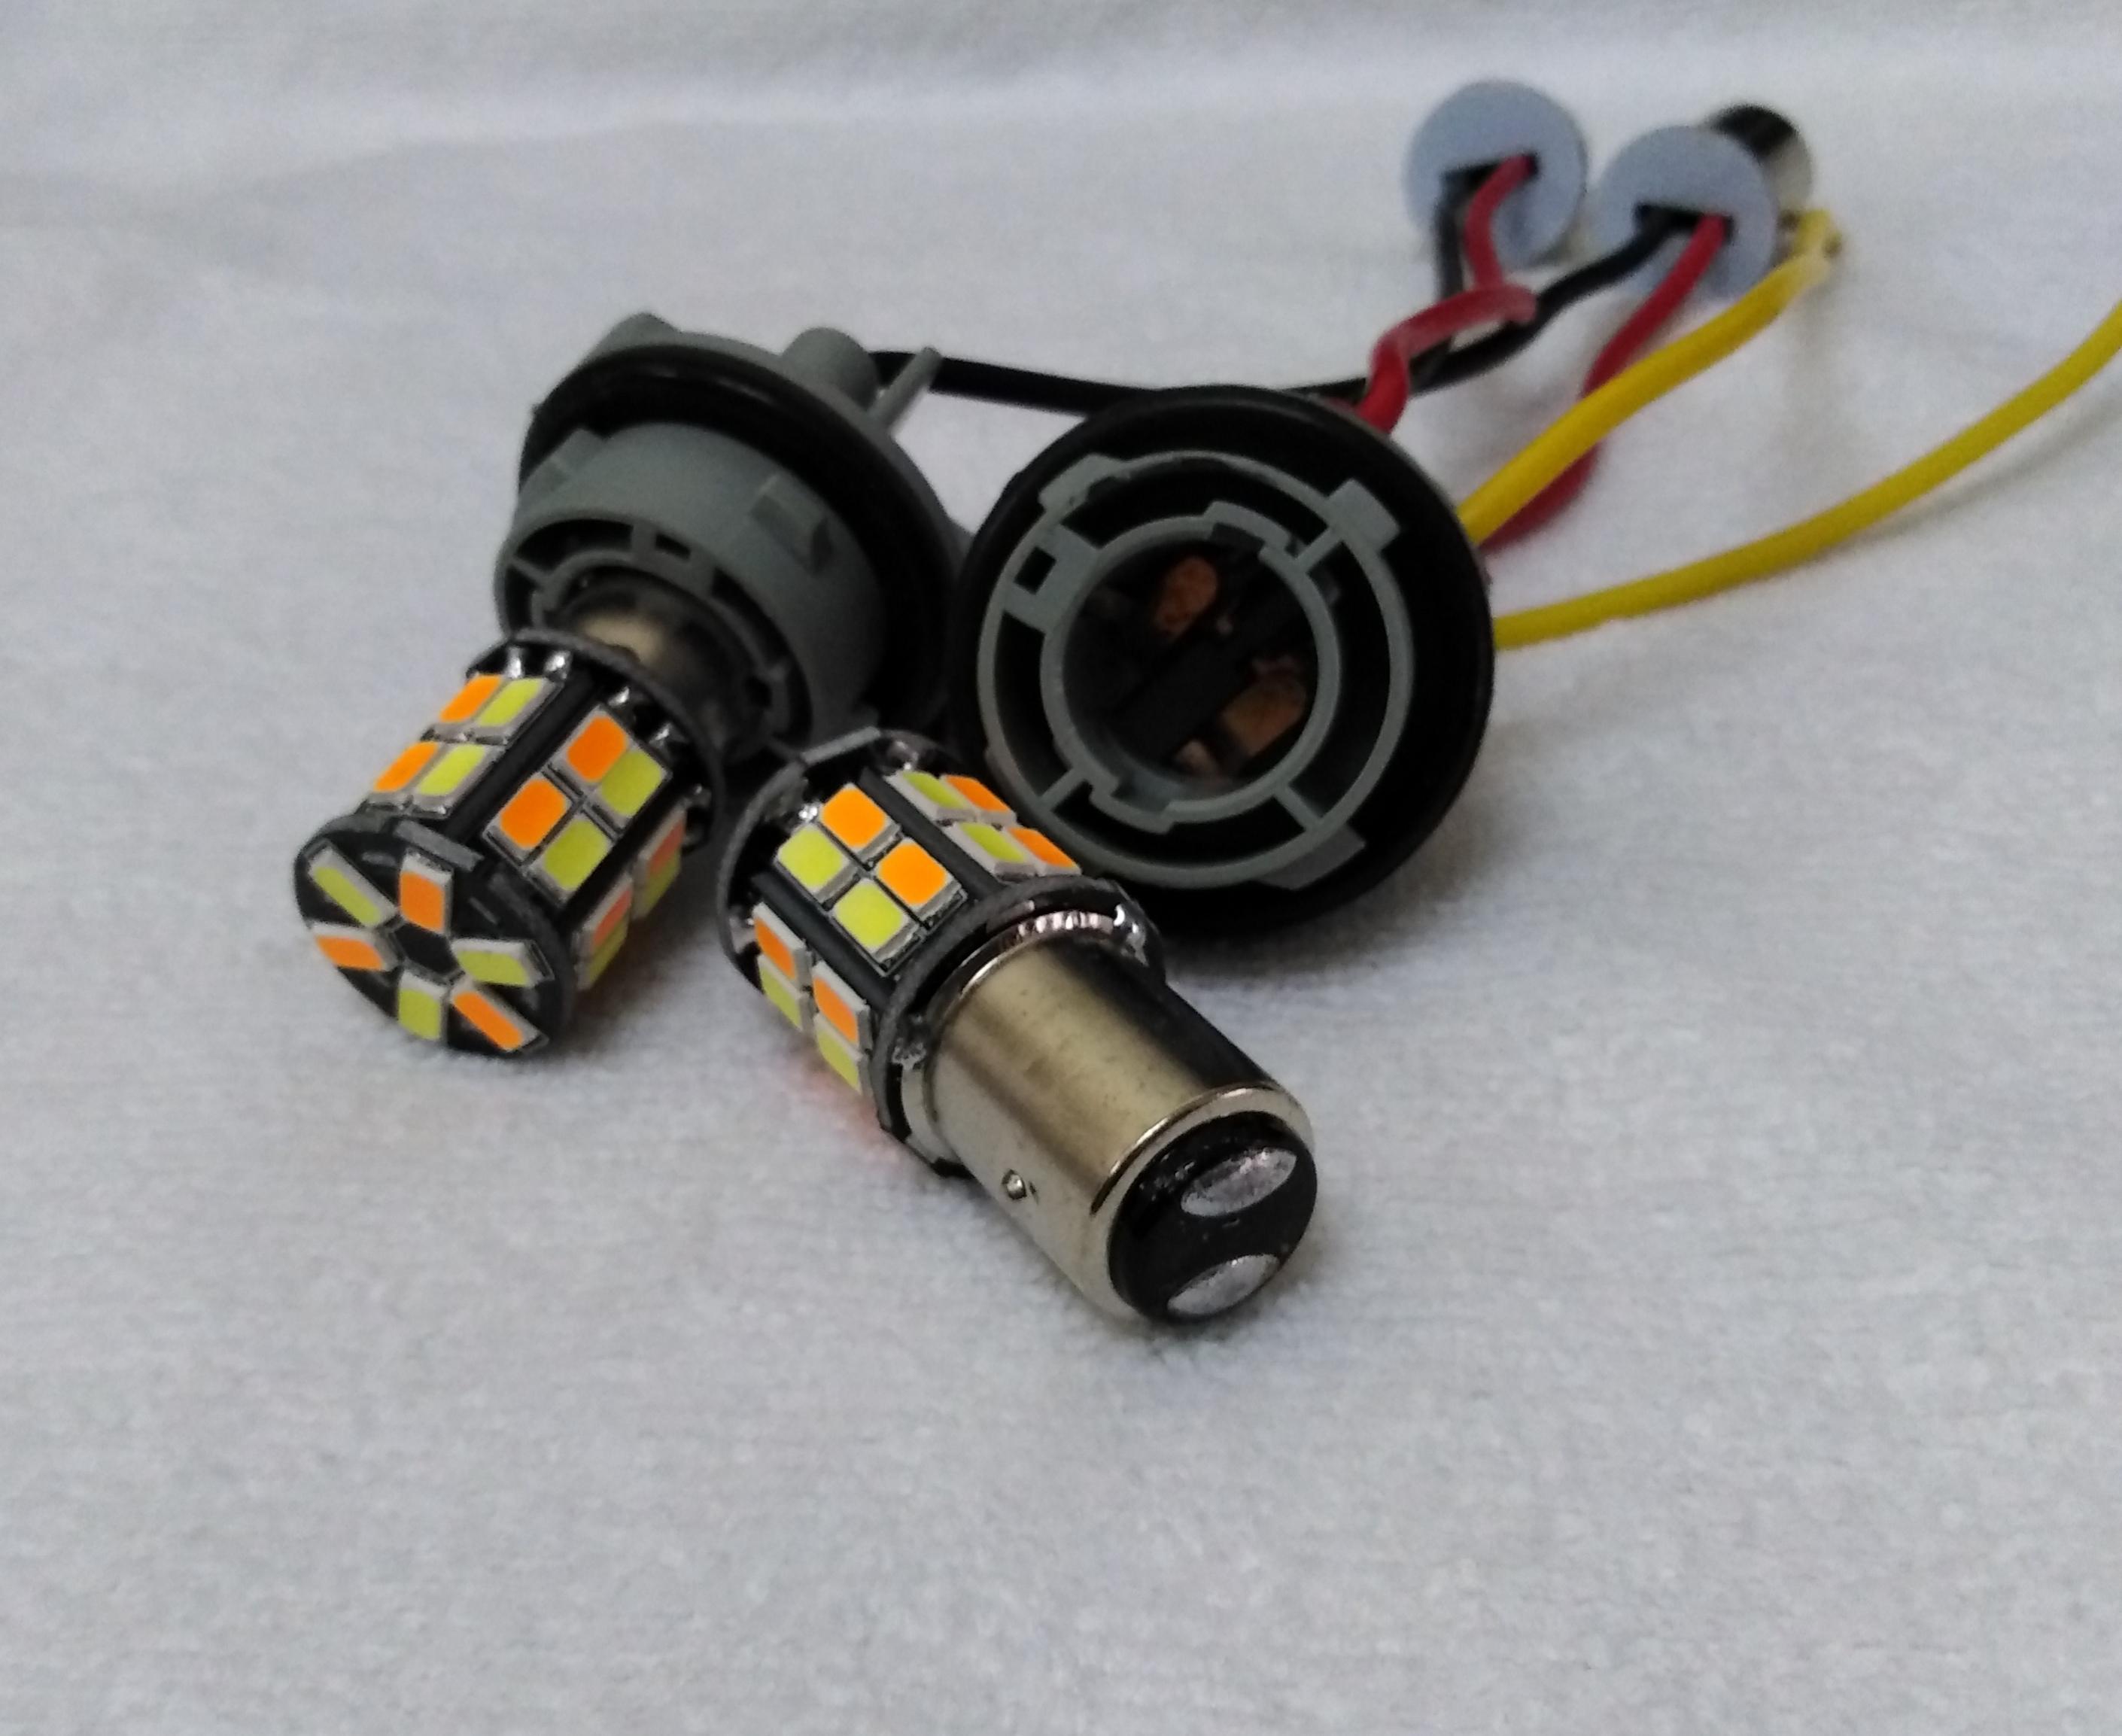 หลอดหรี่เลี้ยว LEDดีแมกเก่า ไฟหรี่ขาว-เลี้ยวส้ม หลอดไฟหรี่หน้าLED (พร้อมขั่วตรง) หรี่-เลี้ยว ขั้วบิด (SS25